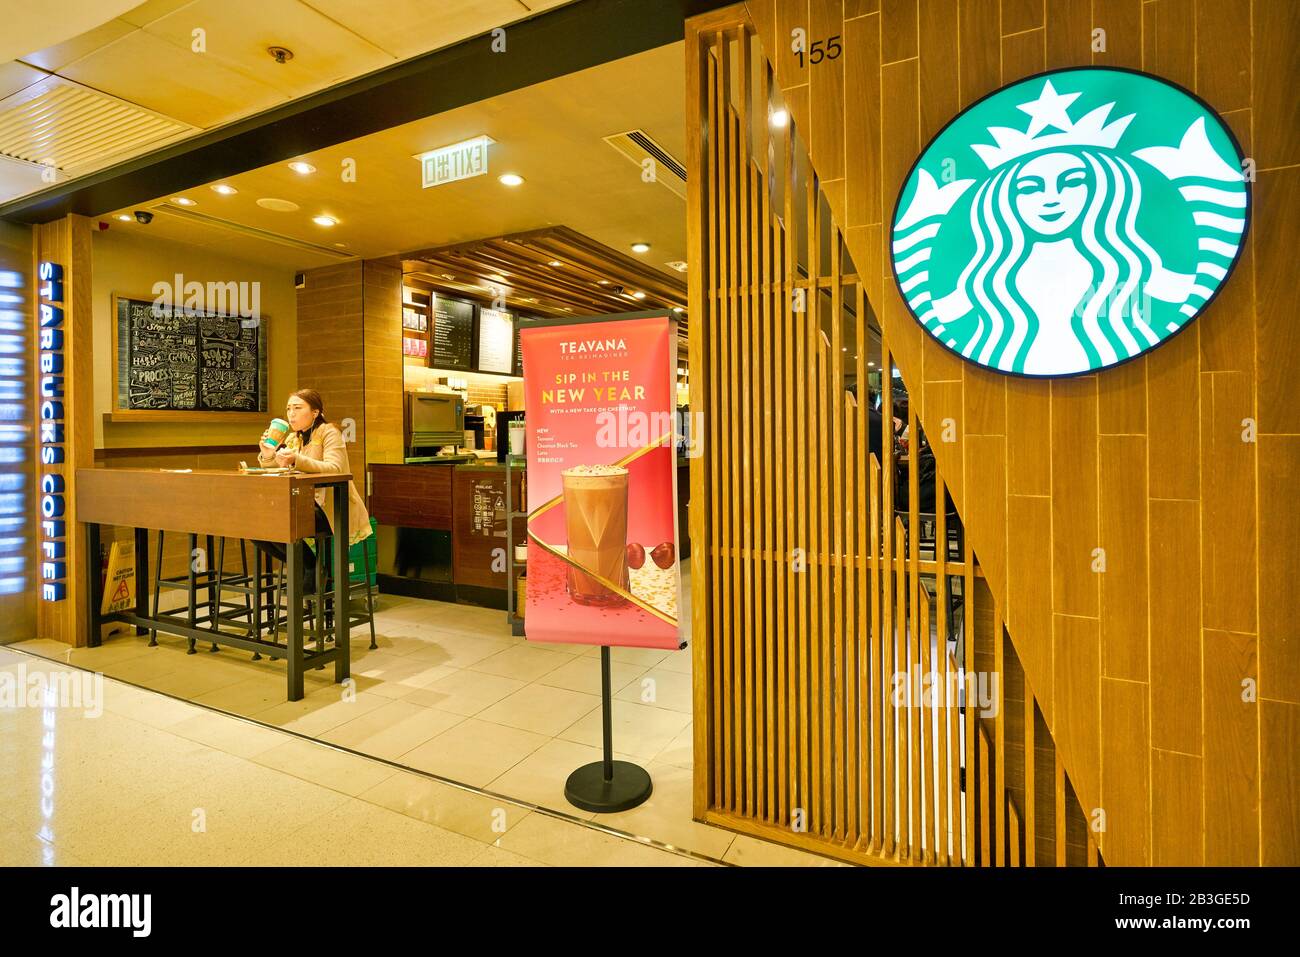 HONG KONG, CHINA - CIRCA JANUARY, 2019: entrance to Starbucks Coffee in Hong Kong. Stock Photo